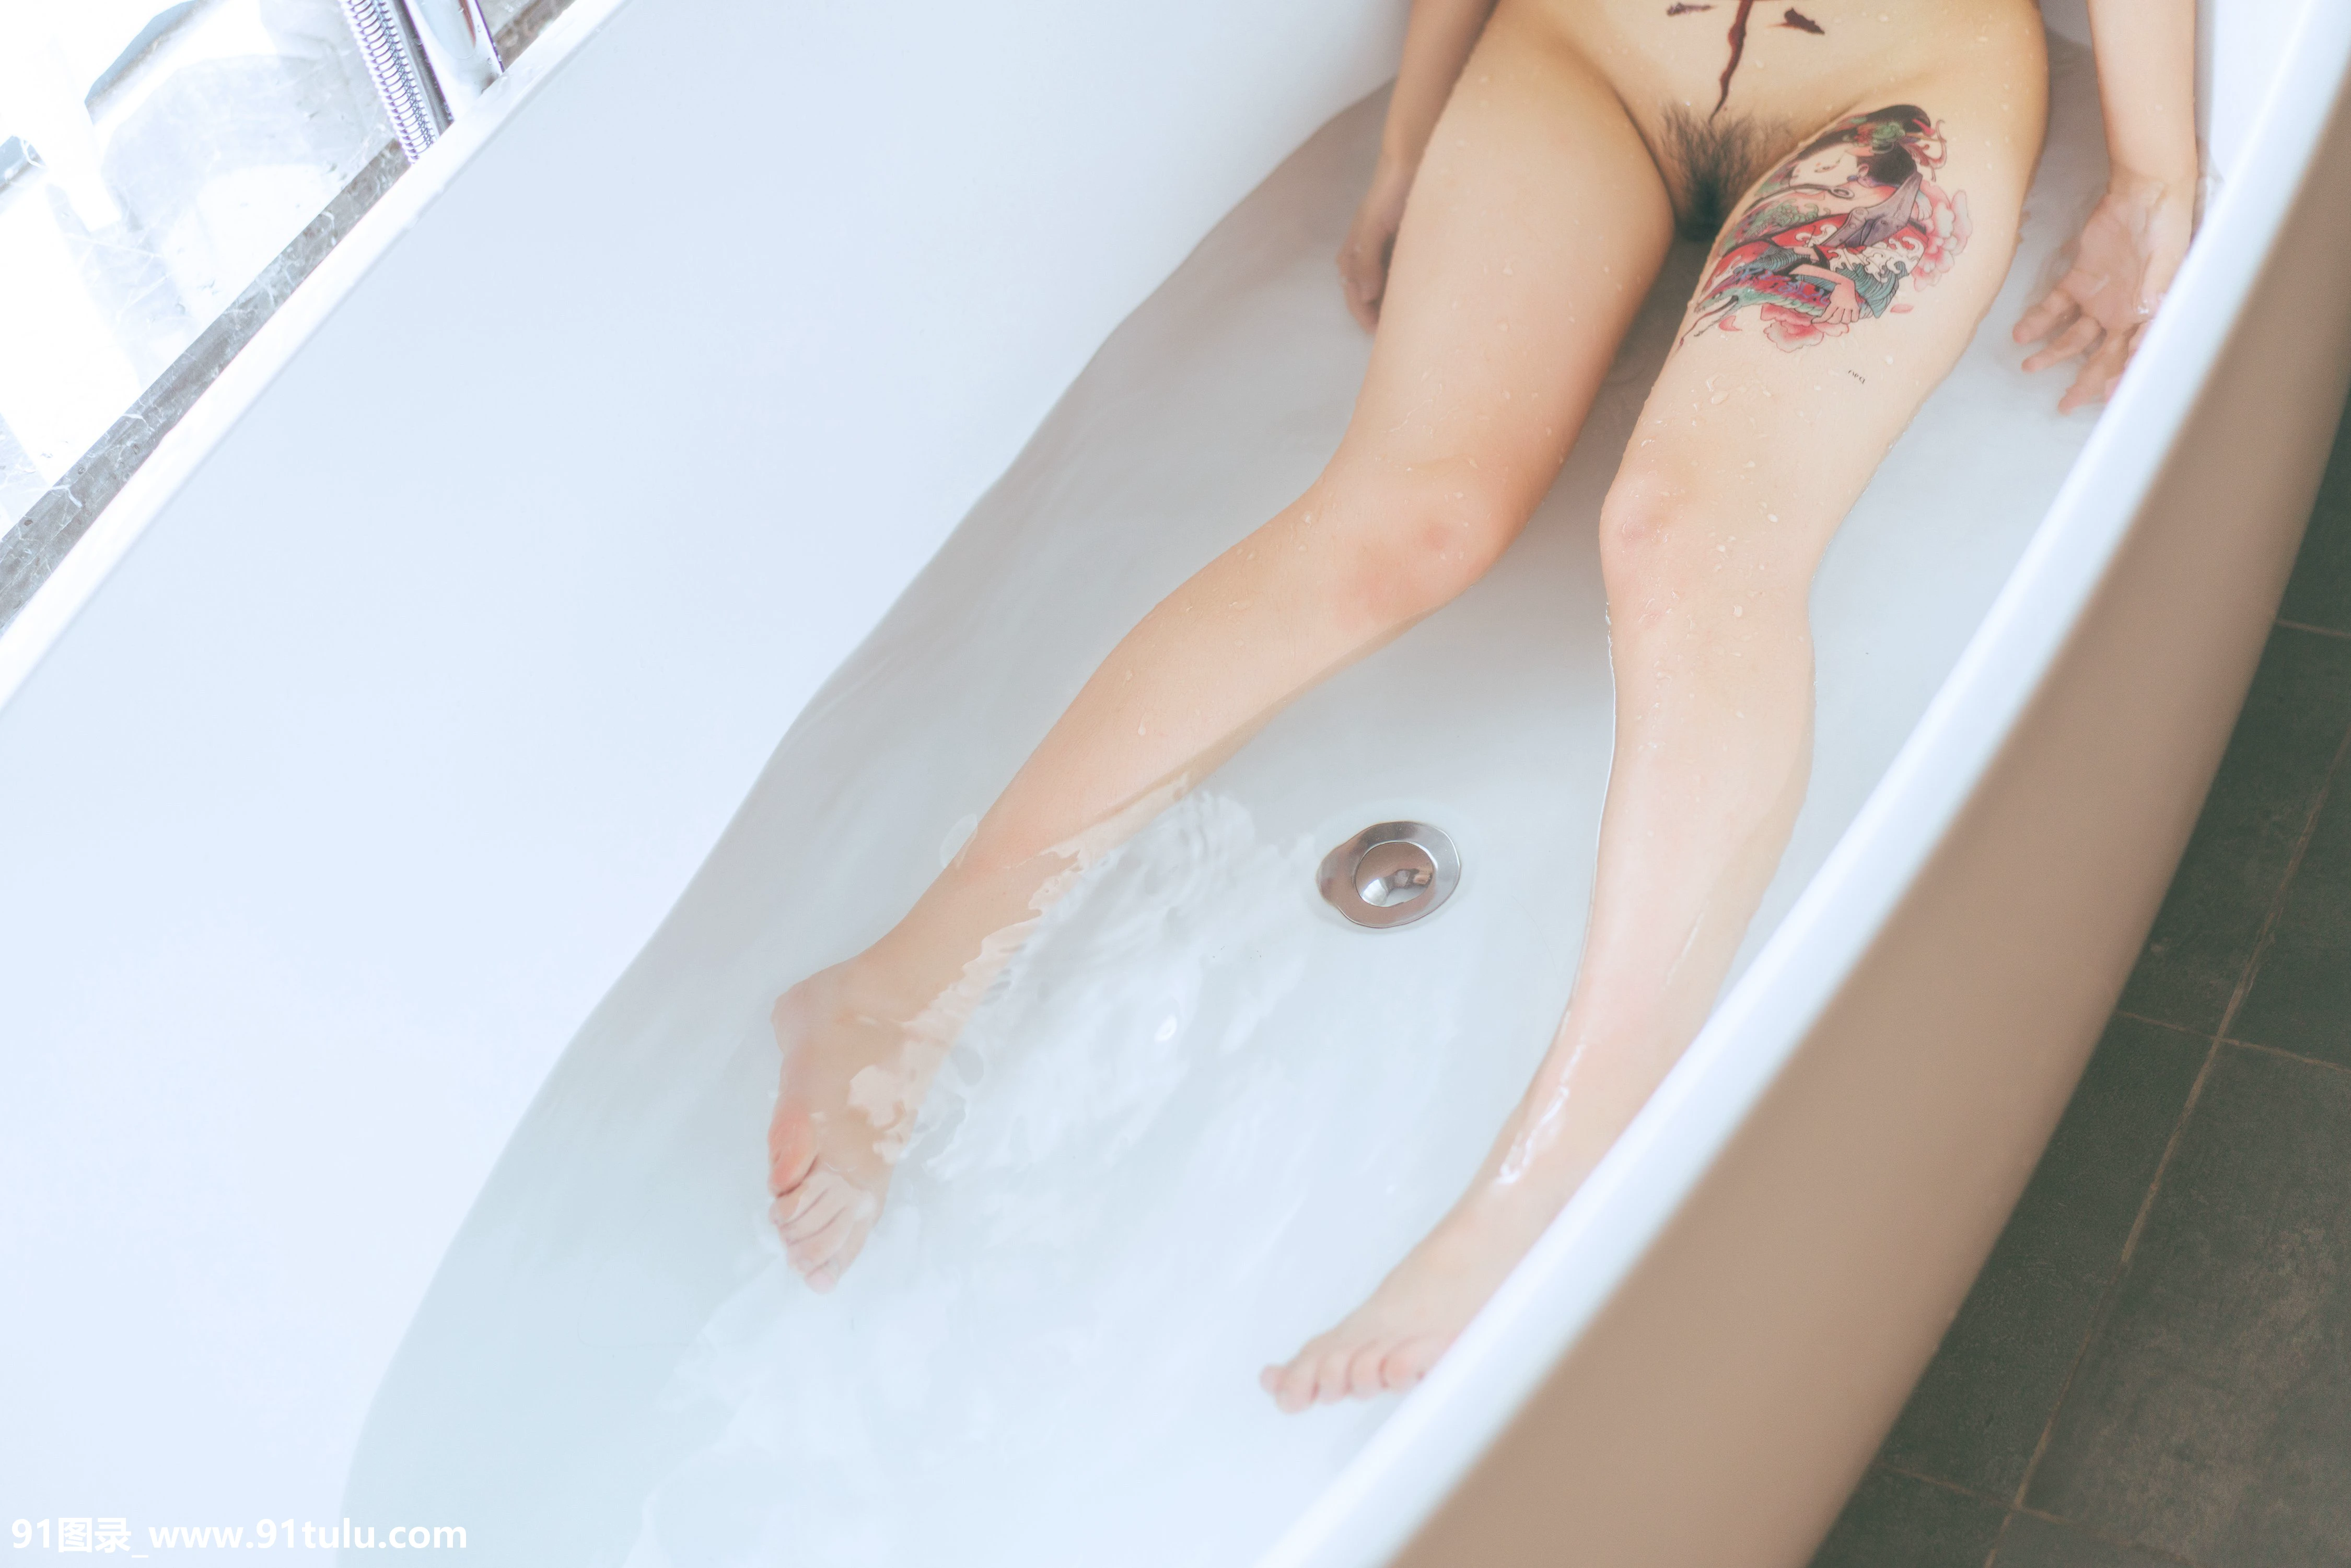 浴缸中的肉体如此迷人-[50P]浴缸,50P,迷人,肉体,肉体,浴缸